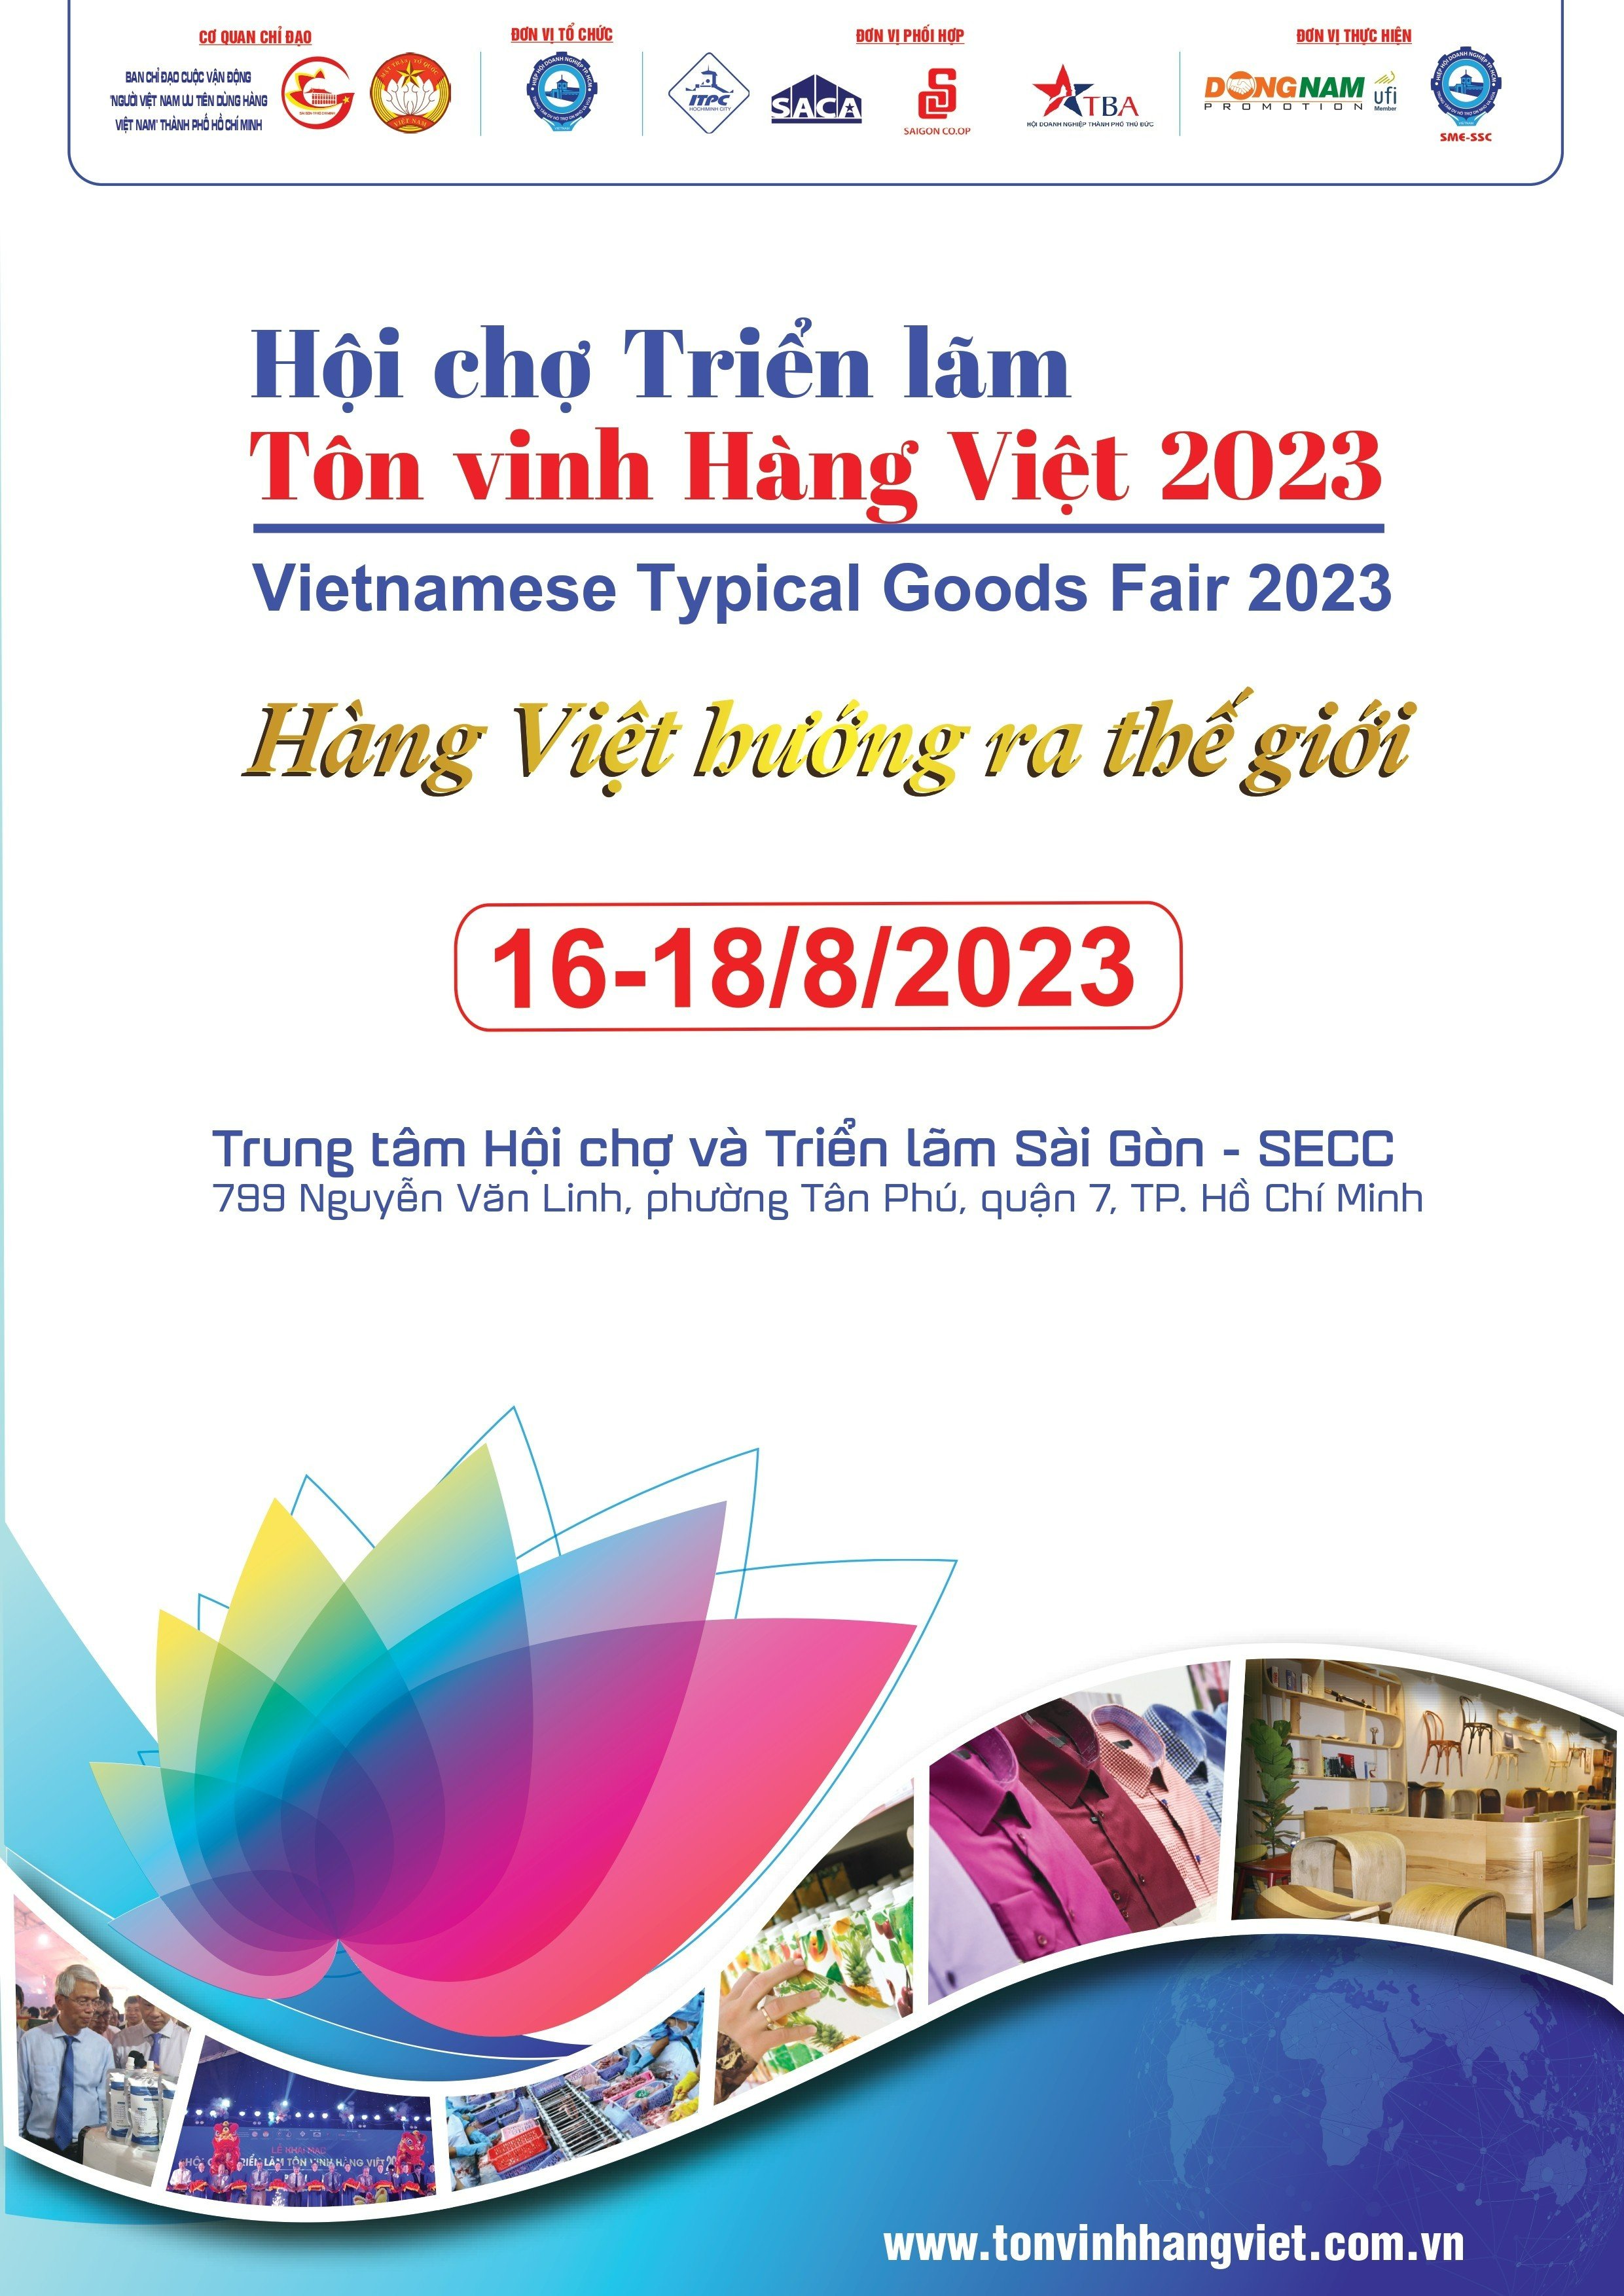 🎊 🎊 HỘI CHỢ TRIỂN LÃM "TÔN VINH HÀNG VIỆT NĂM 2023" - Hàng Việt hướng ra Thế  giới